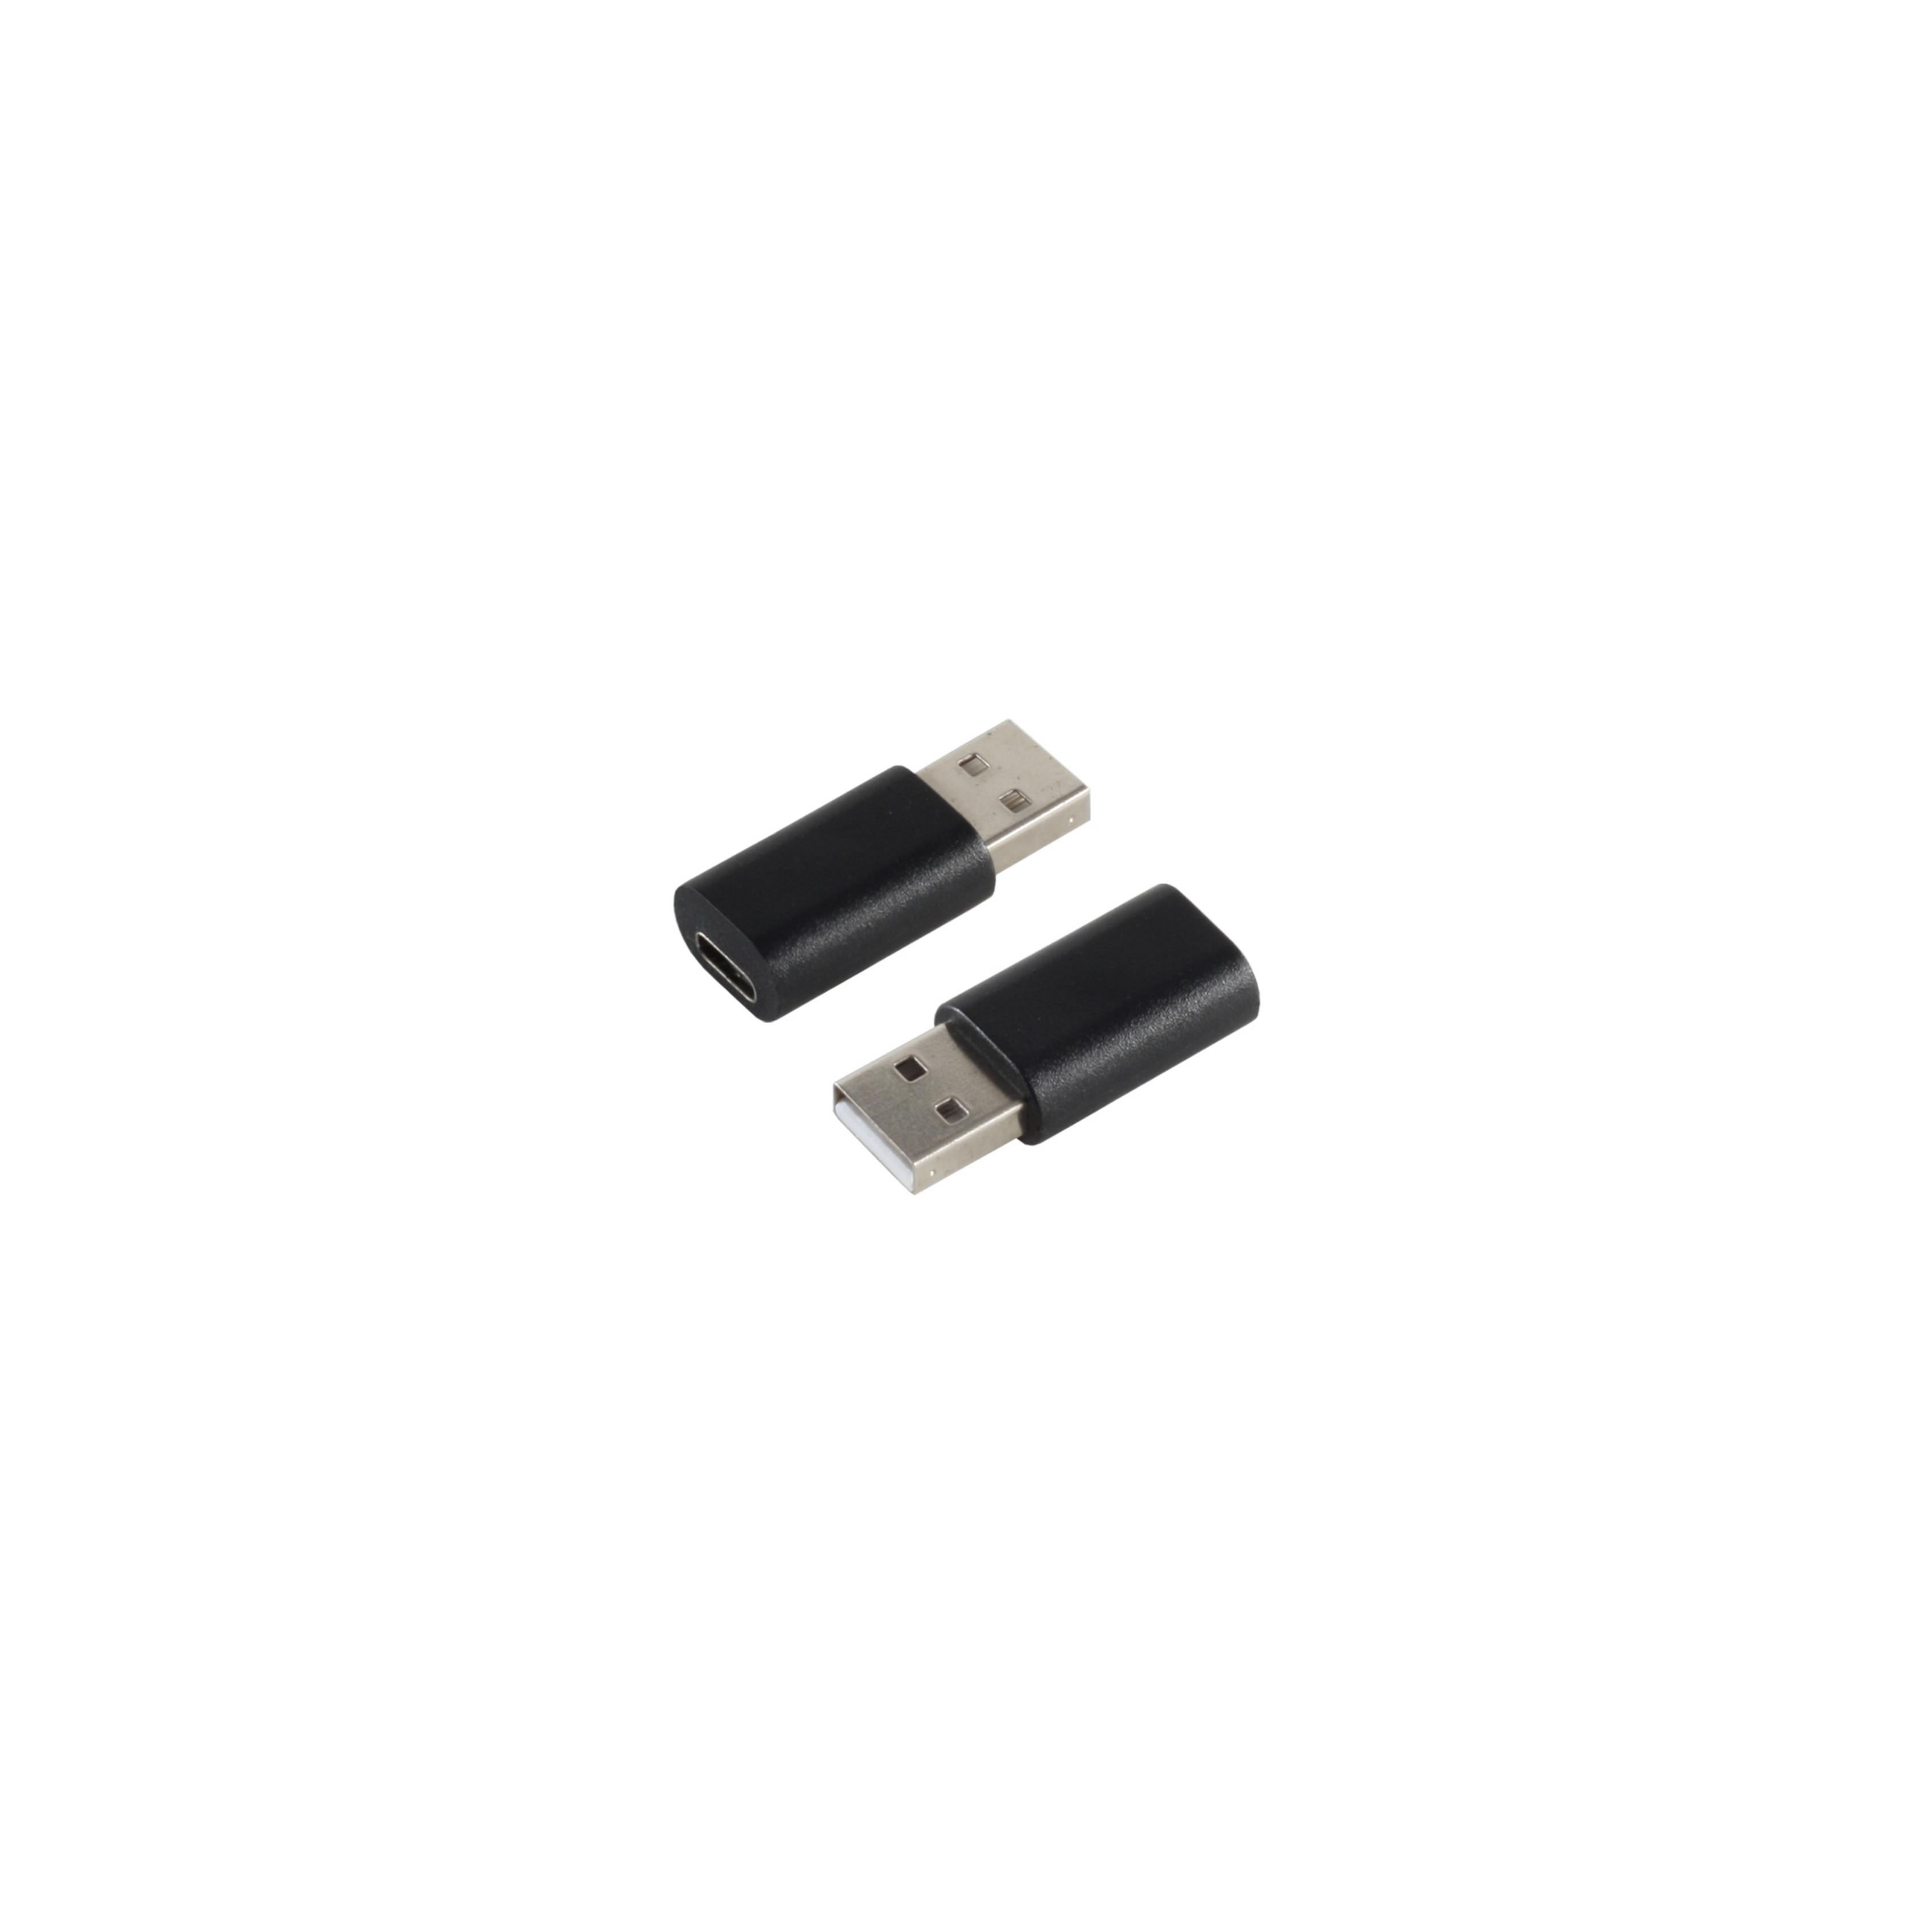 KABELBUDE Adapter USB A Adapter USB-C 3.1 C 2.0 auf Buchse USB Stecker